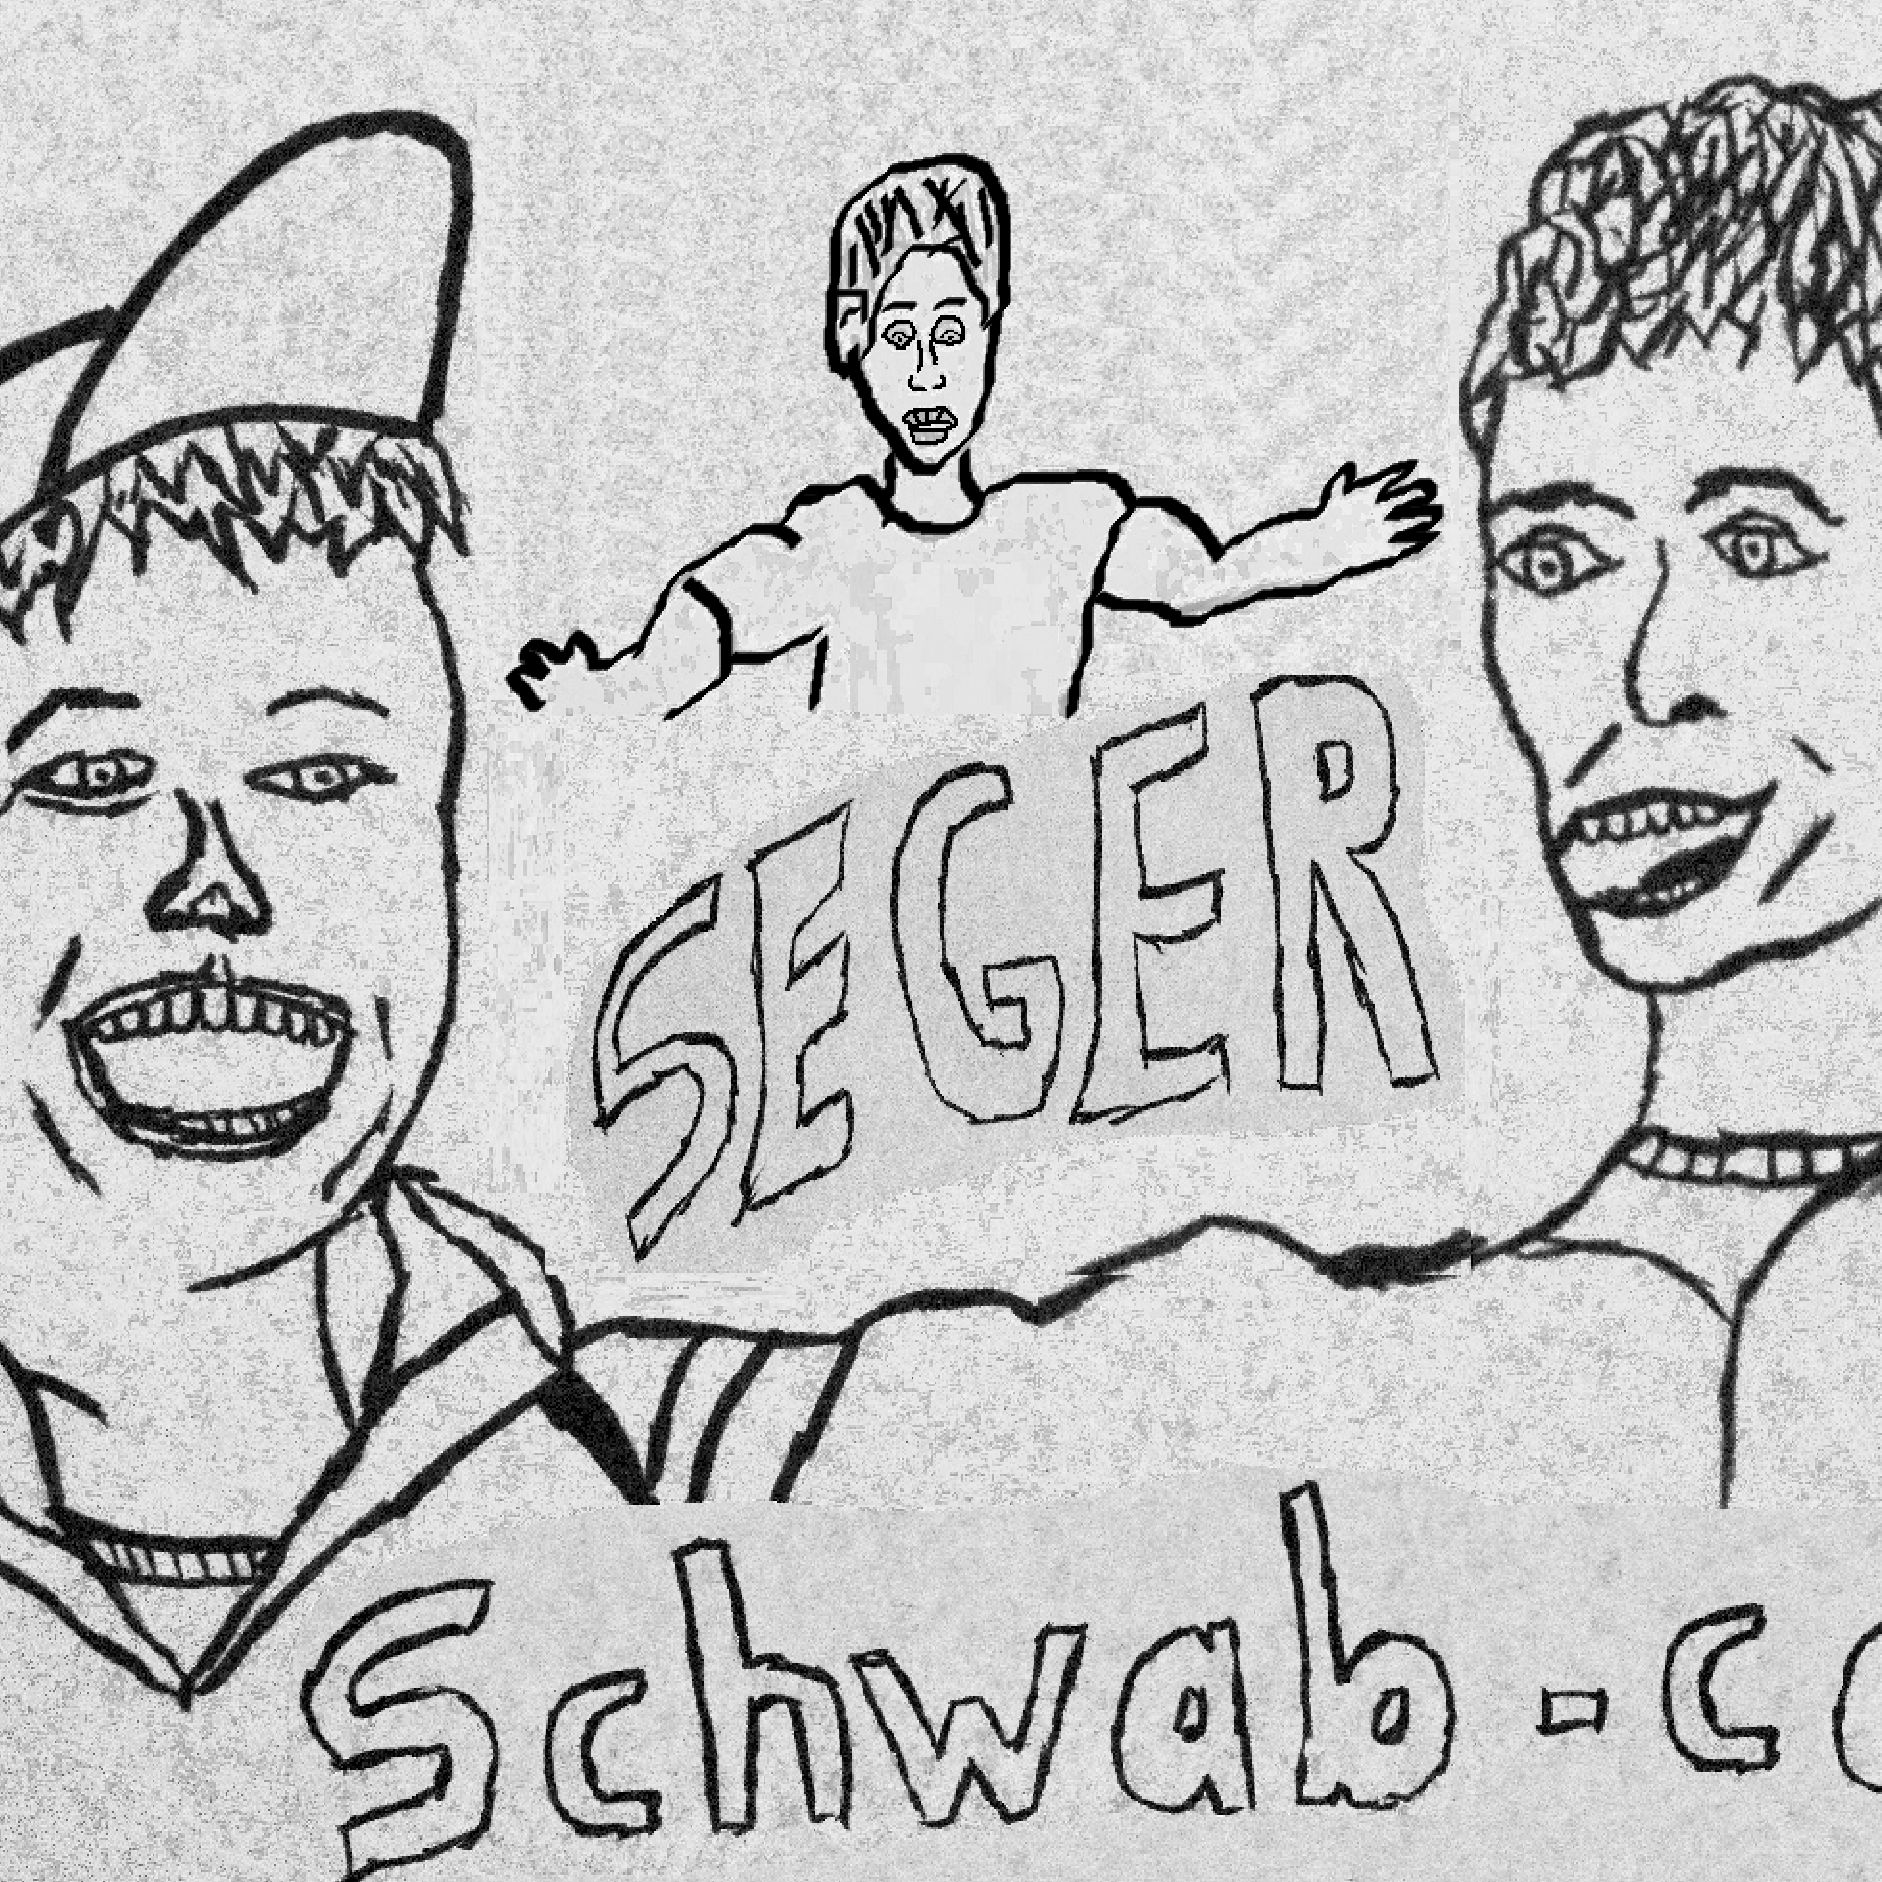 The Seger SchwabCast Week 2